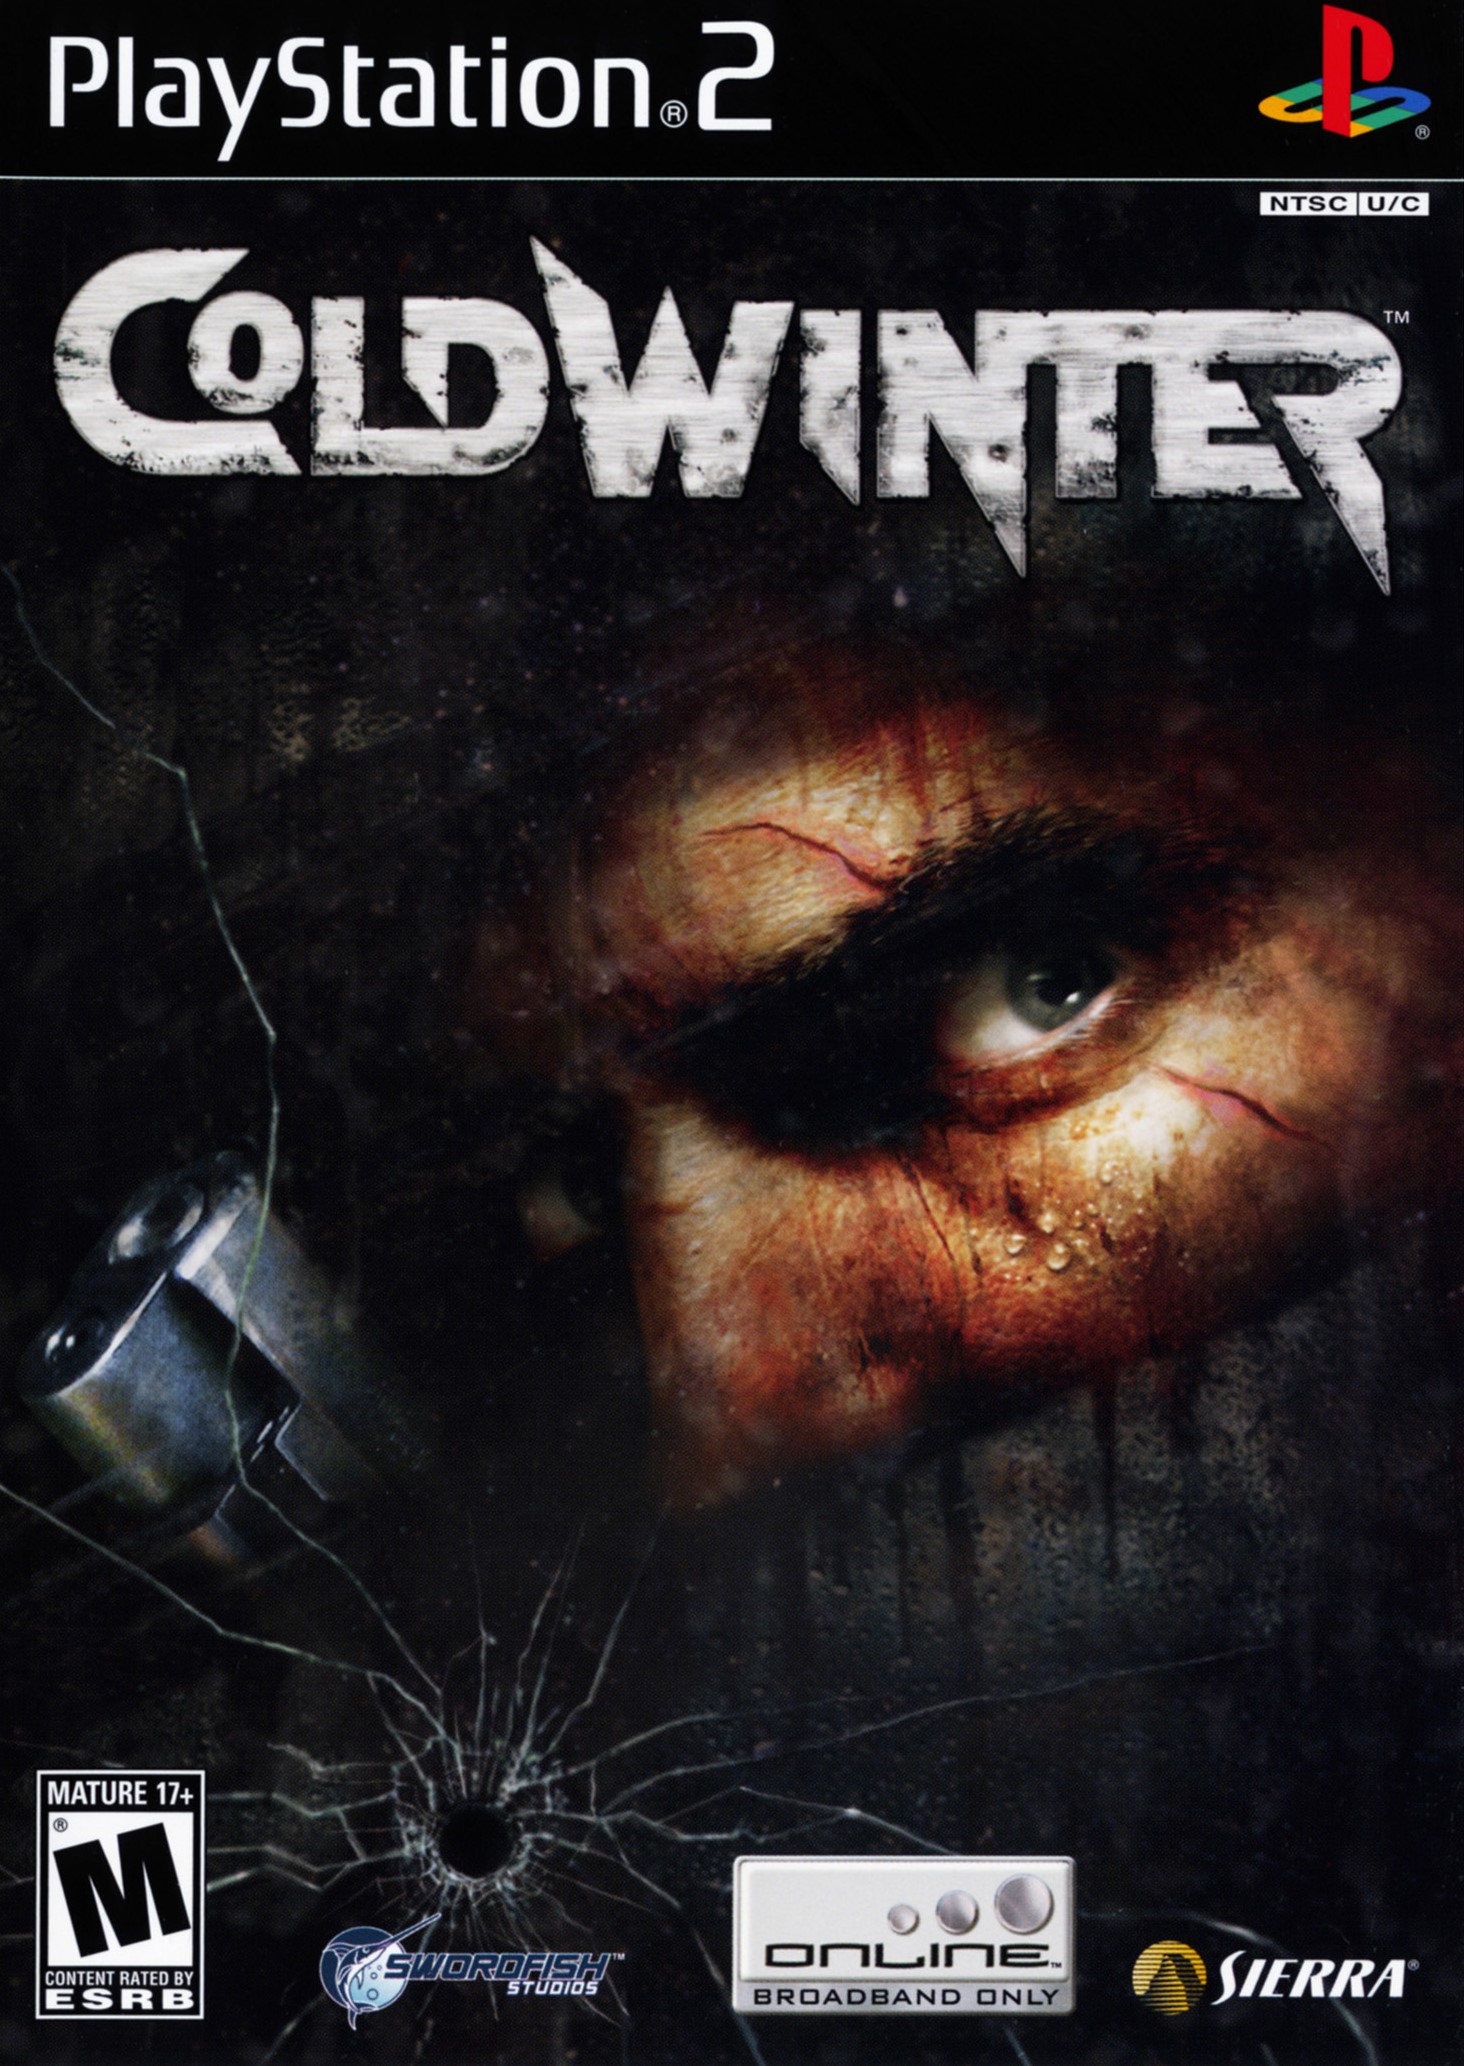 Cold Winter (Spanyol) - PlayStation 2 Játékok